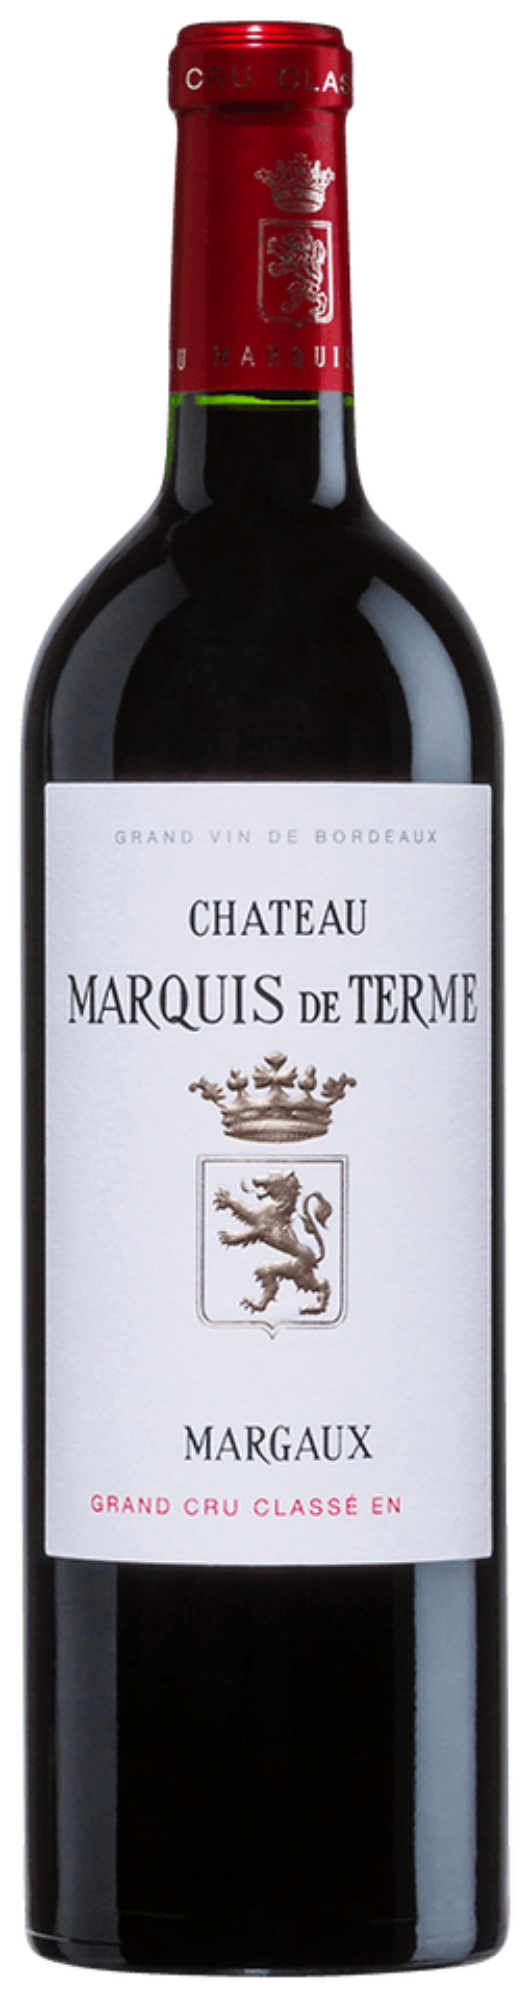 Château Marquis de Terme Margaux Grand Cru Classe 2019